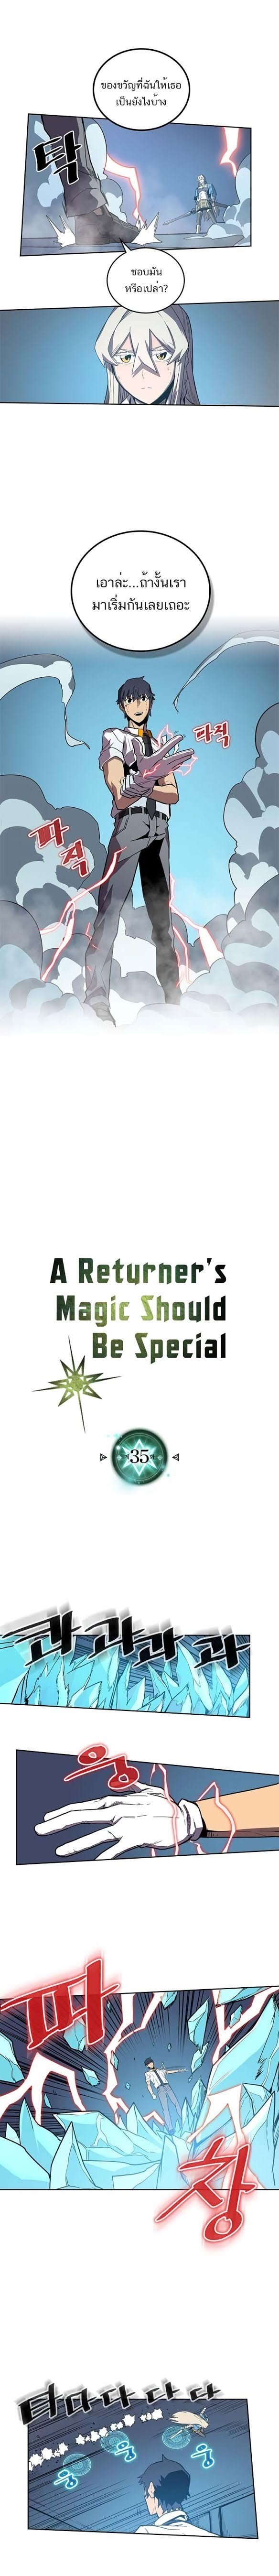 A Returner’s Magic Should Be Special35 02